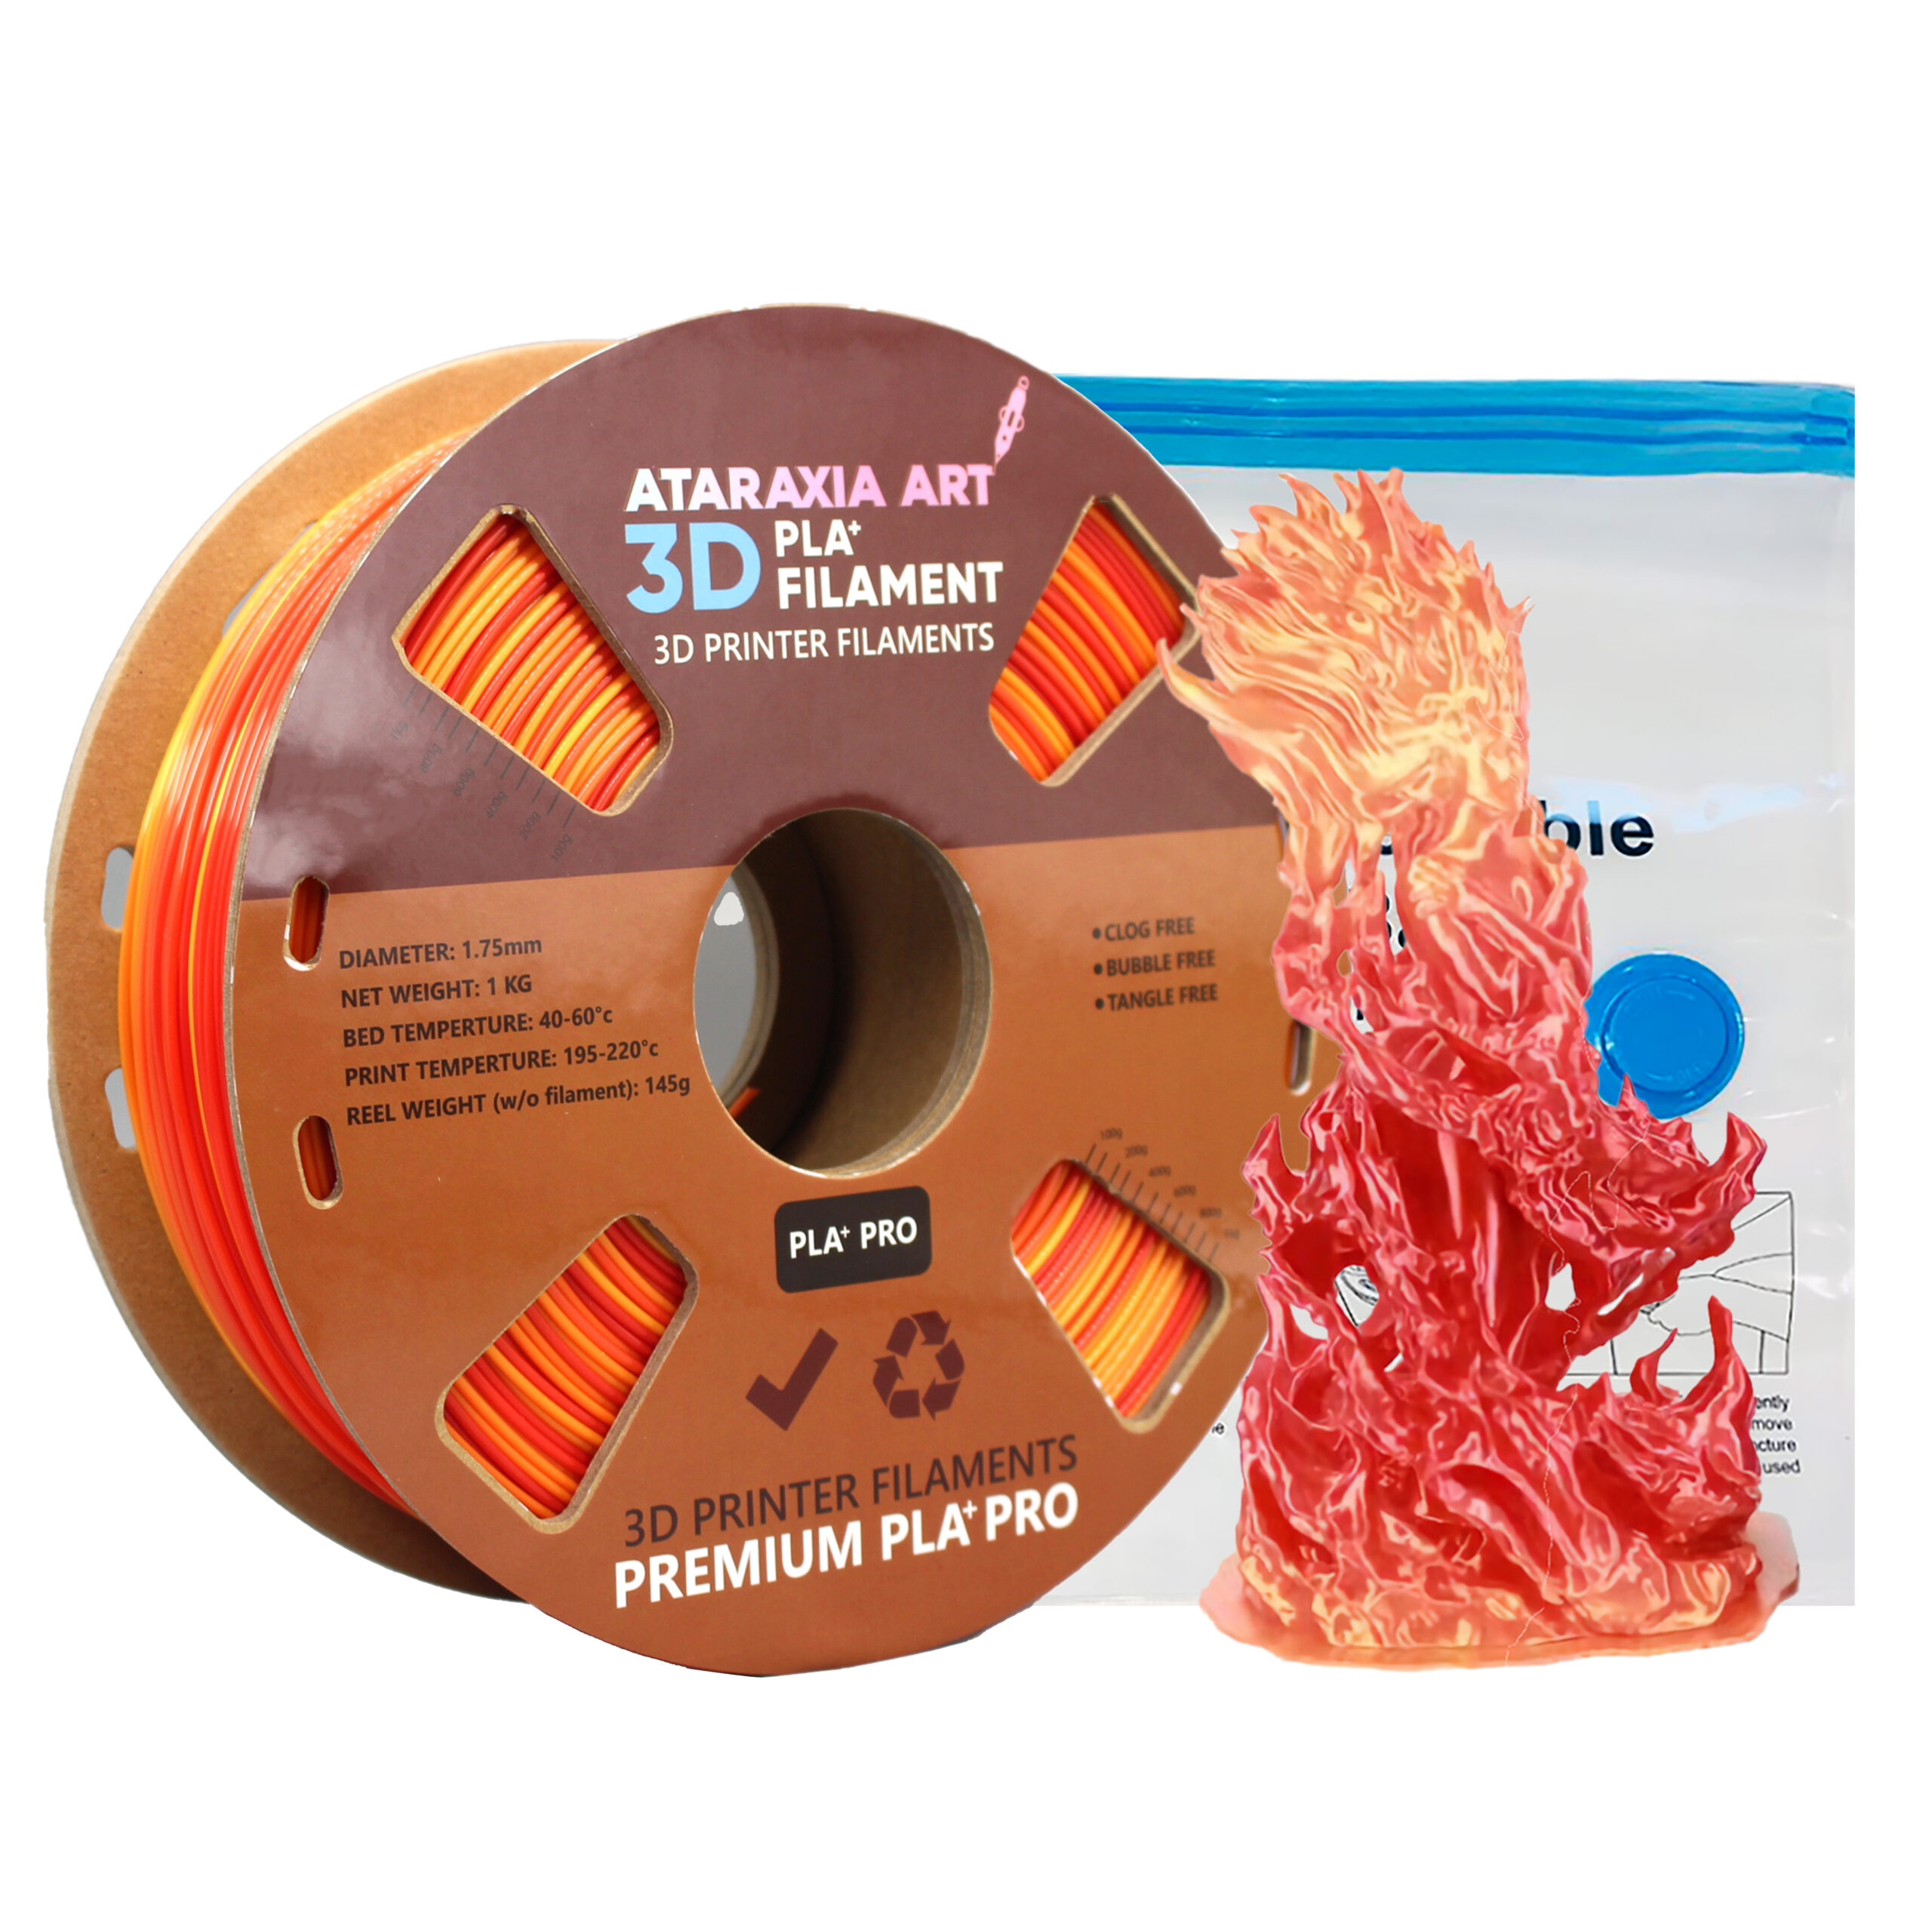 ATARAXIA ART PETG Filament 1.75mm,3D Printer Filament,1Kg(2.2lb) tidy  winding Spool, Dimensional Accuracy ±0.02mm, with Filament Storage Vacuum  Bag, Fit Most FDM 3D Printer, Pantone Match, PETG Gold 